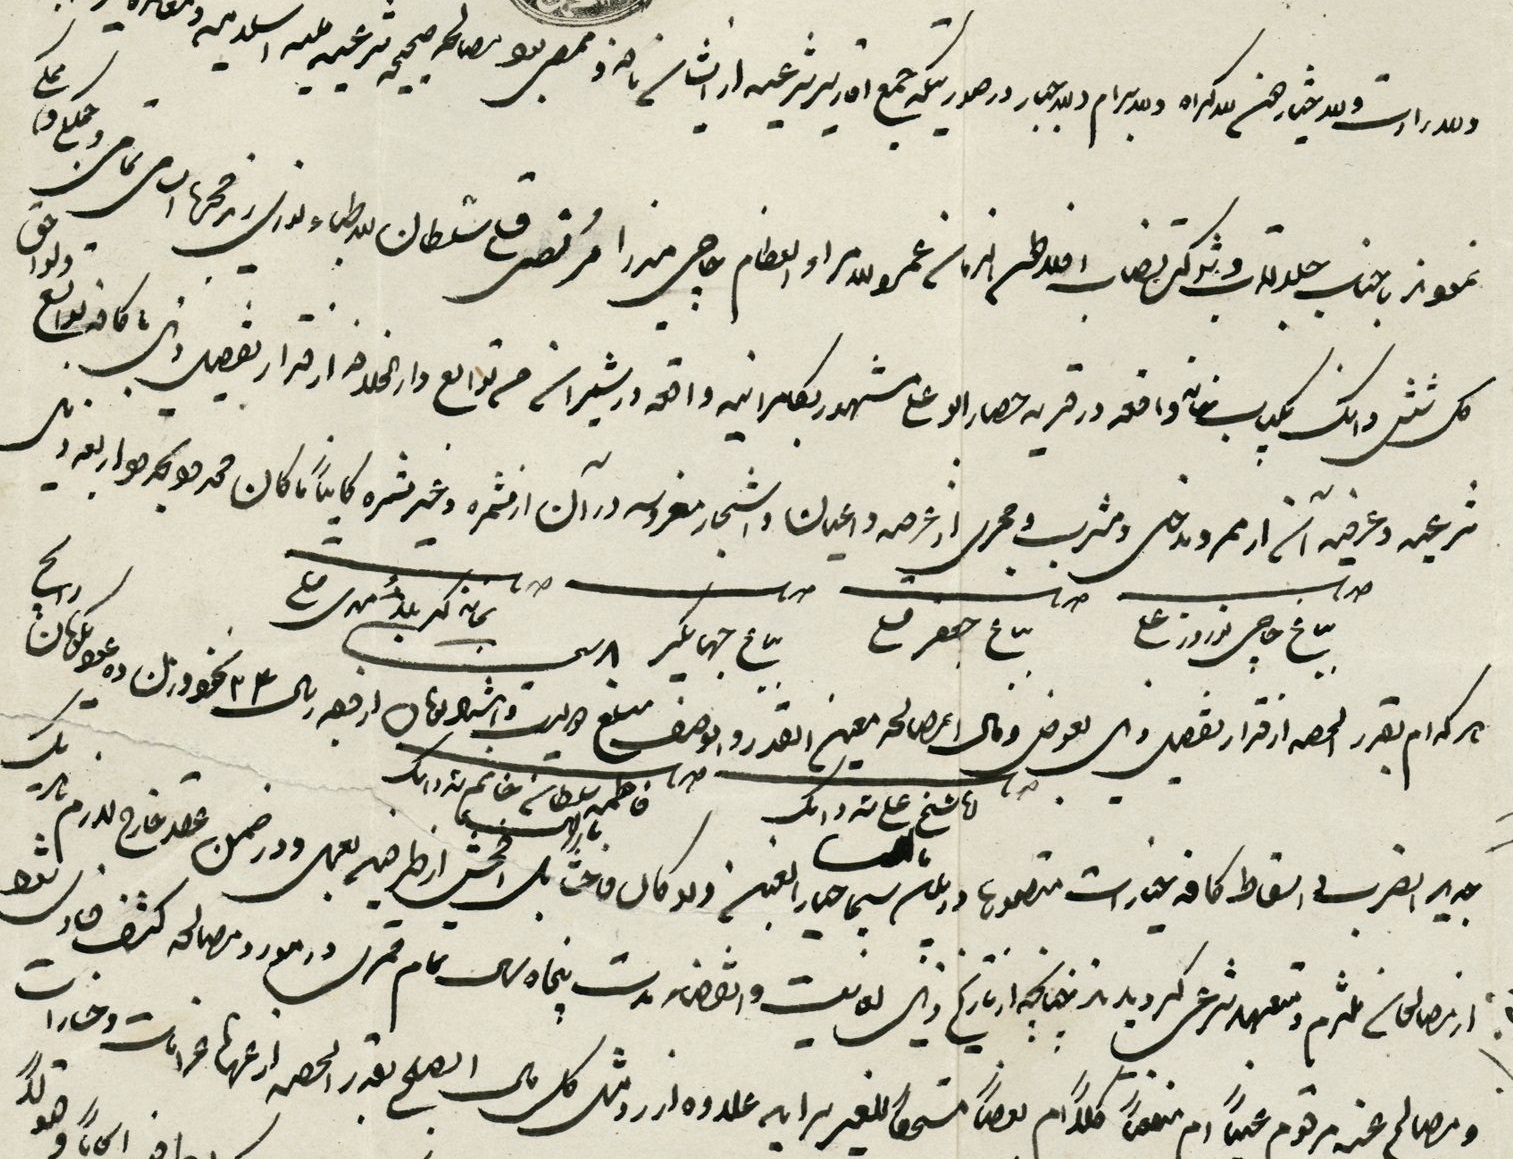 قیمت برده و کنیز در دوران قاجار؛ بر اساس اسناد قدیمی